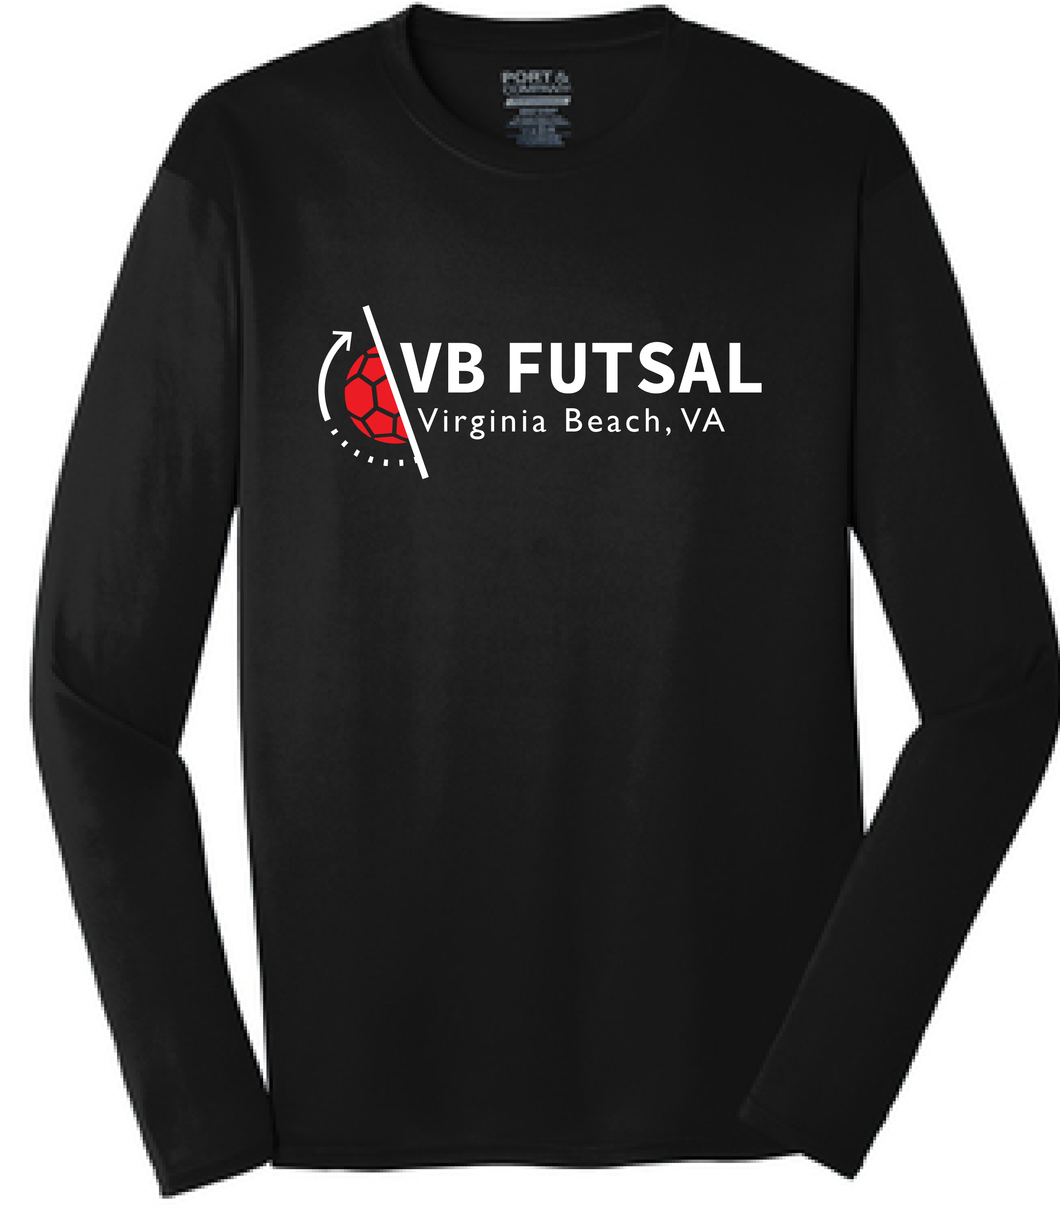 Long Sleeve Performance Tee / Black / VB Futsal